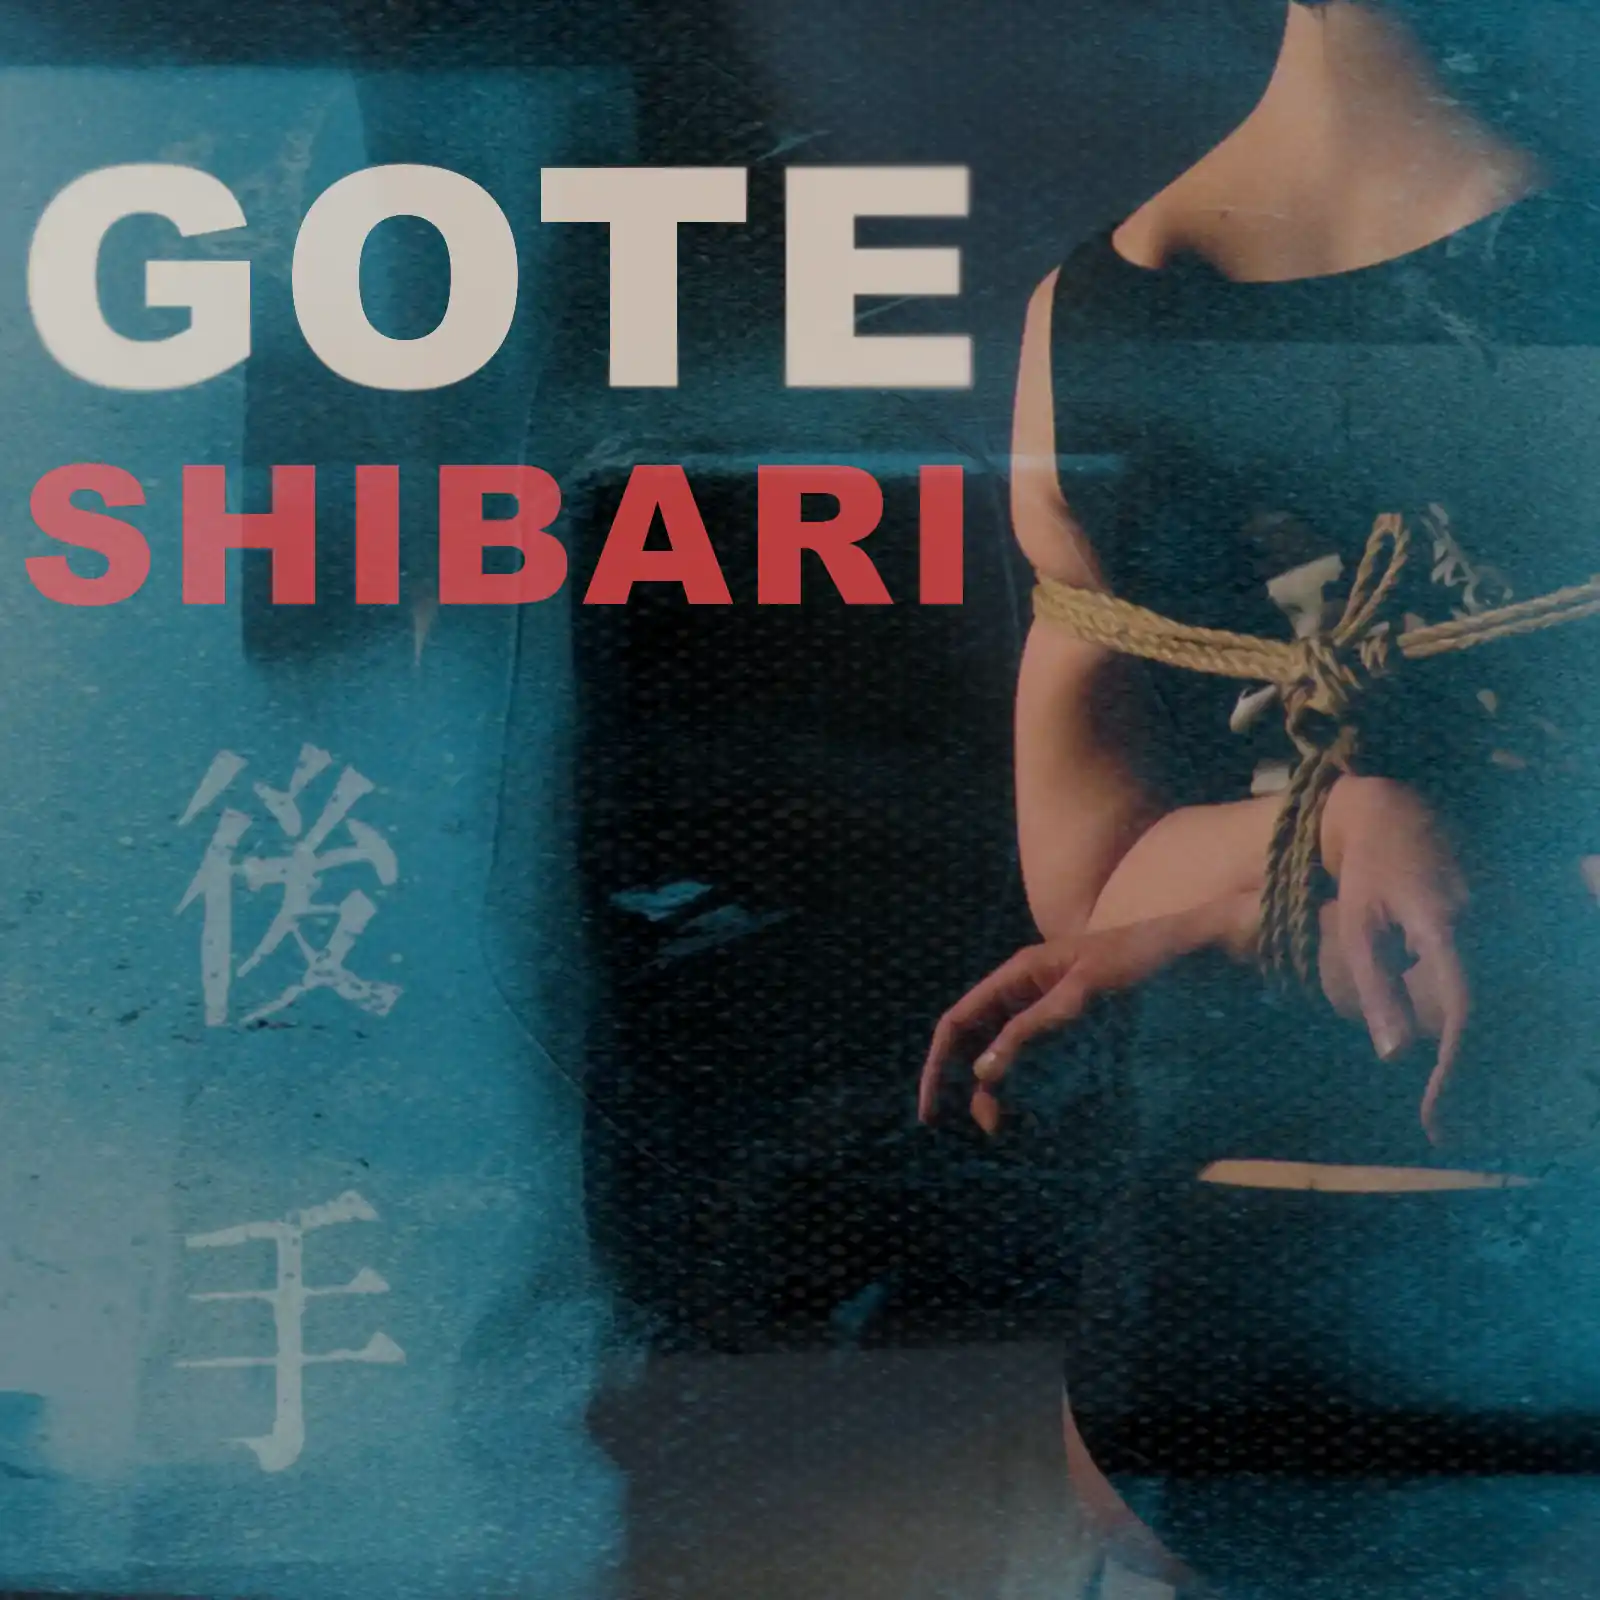 Básicos del Shibari: Gote